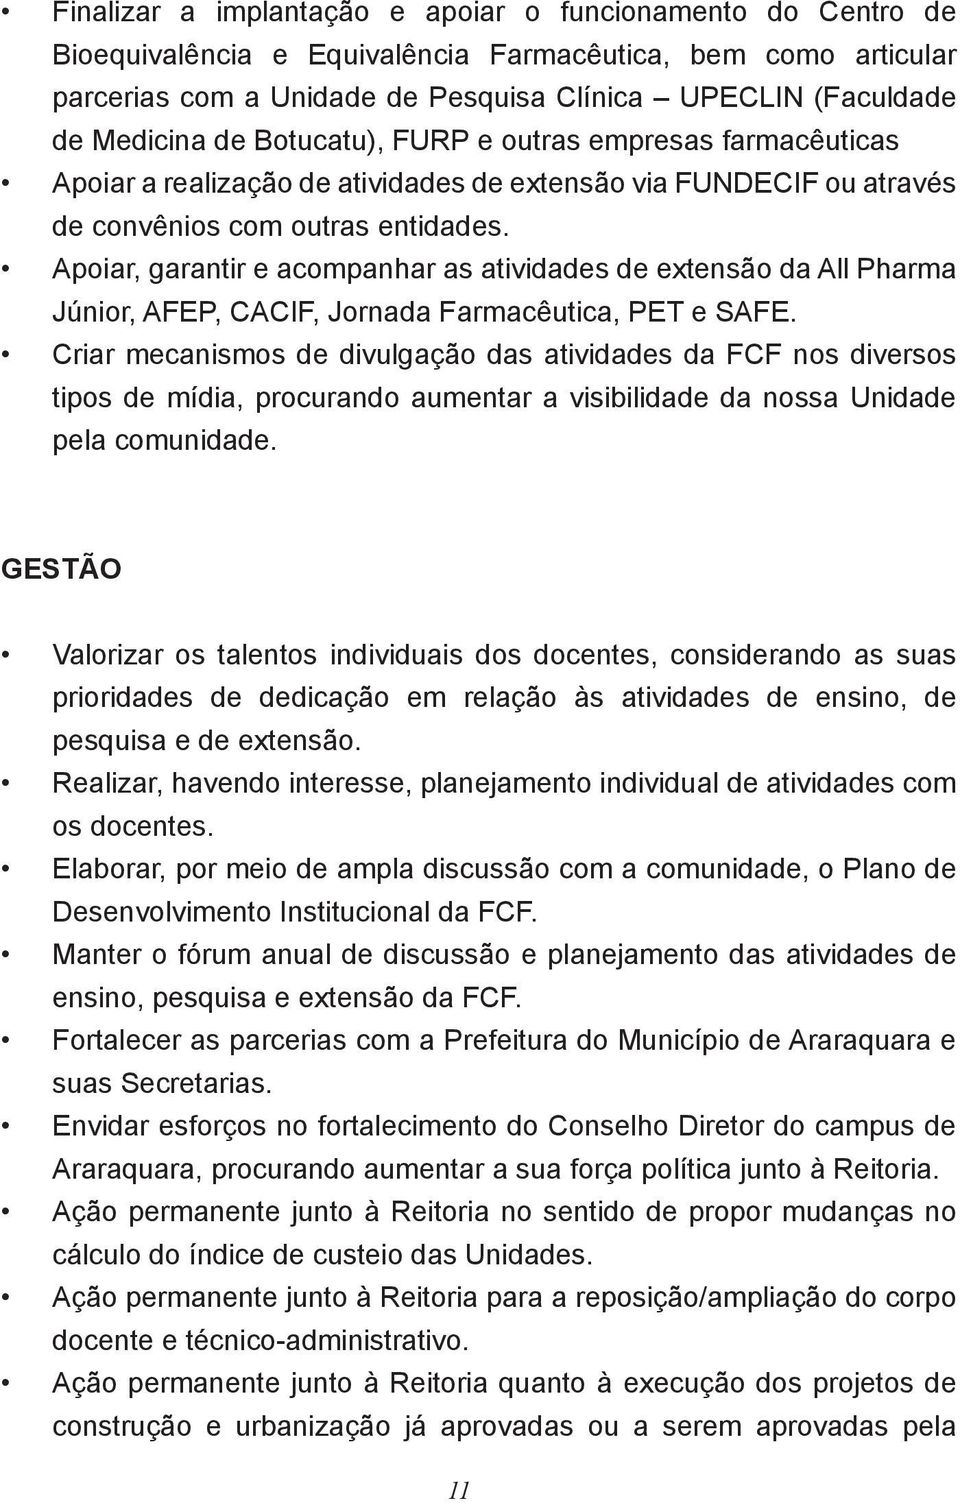 Apoiar, garantir e acompanhar as atividades de extensão da All Pharma Júnior, AFEP, CACIF, Jornada Farmacêutica, PET e SAFE.